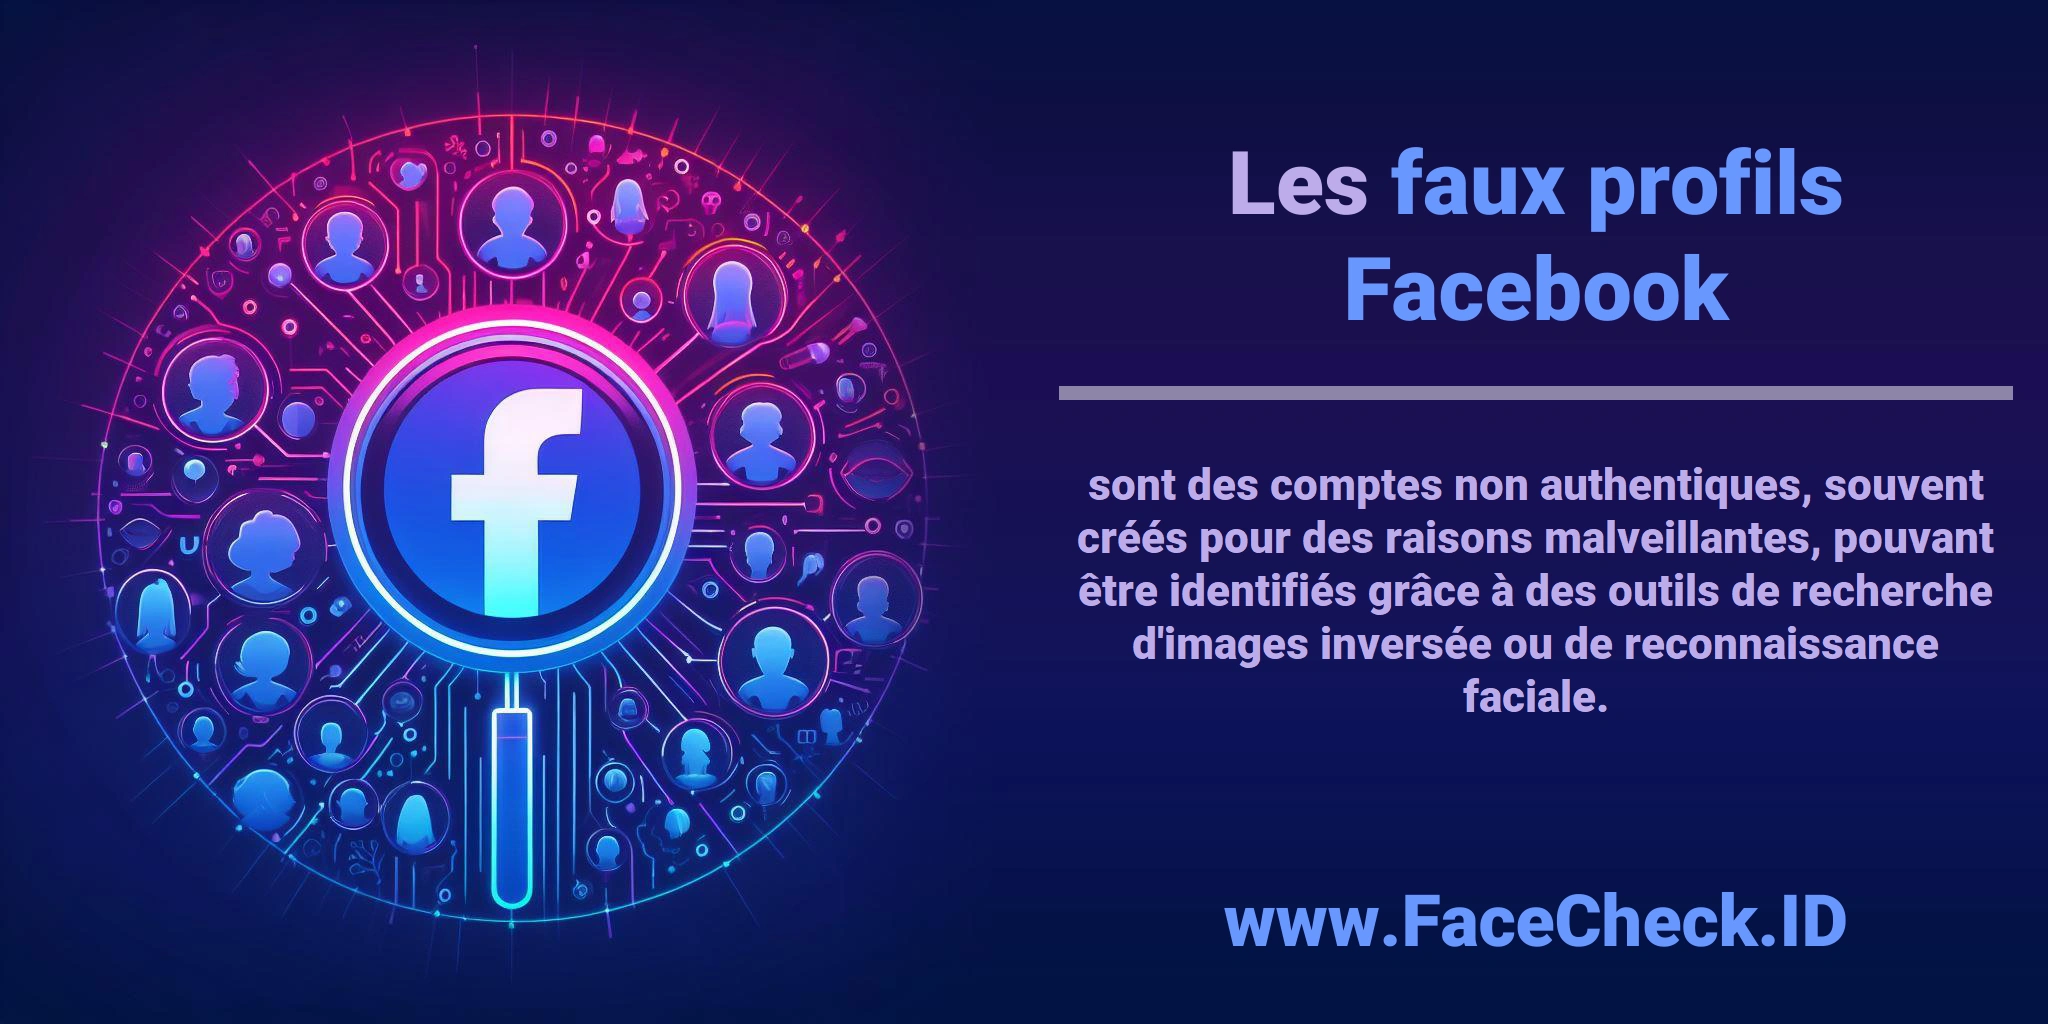 Les <b>faux profils Facebook</b> sont des comptes non authentiques, souvent créés pour des raisons malveillantes, pouvant être identifiés grâce à des outils de recherche d'images inversée ou de reconnaissance faciale.